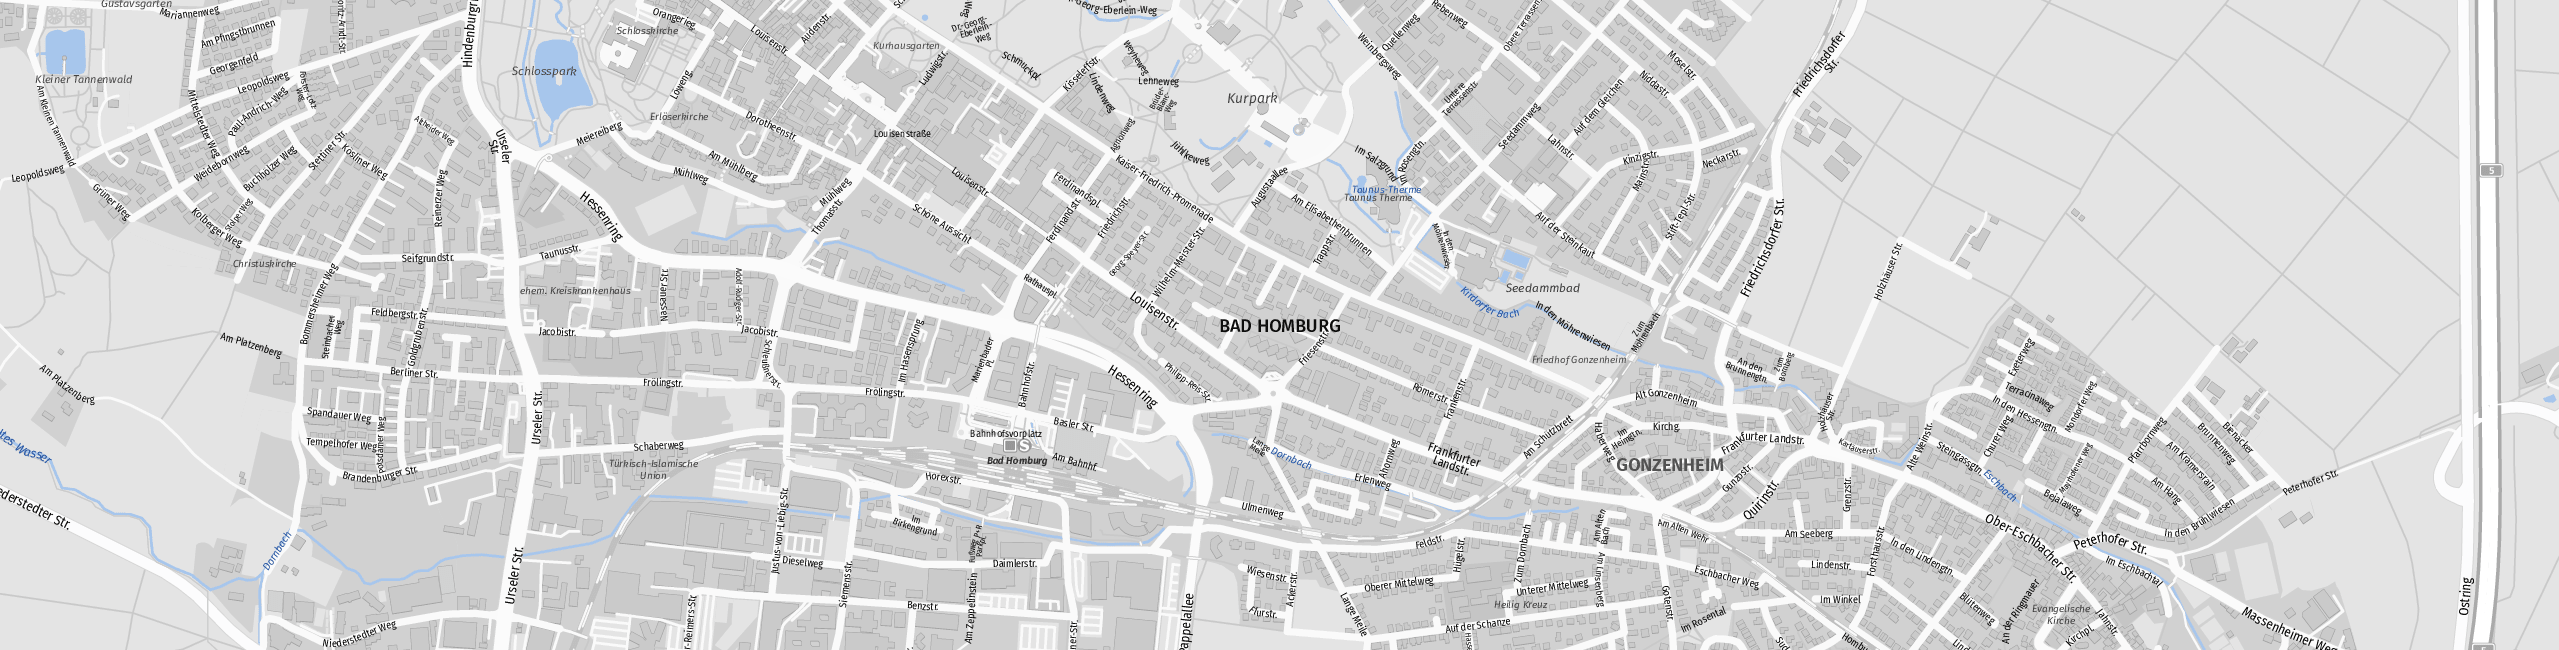 Stadtplan Bad Homburg vor der Höhe zum Downloaden.